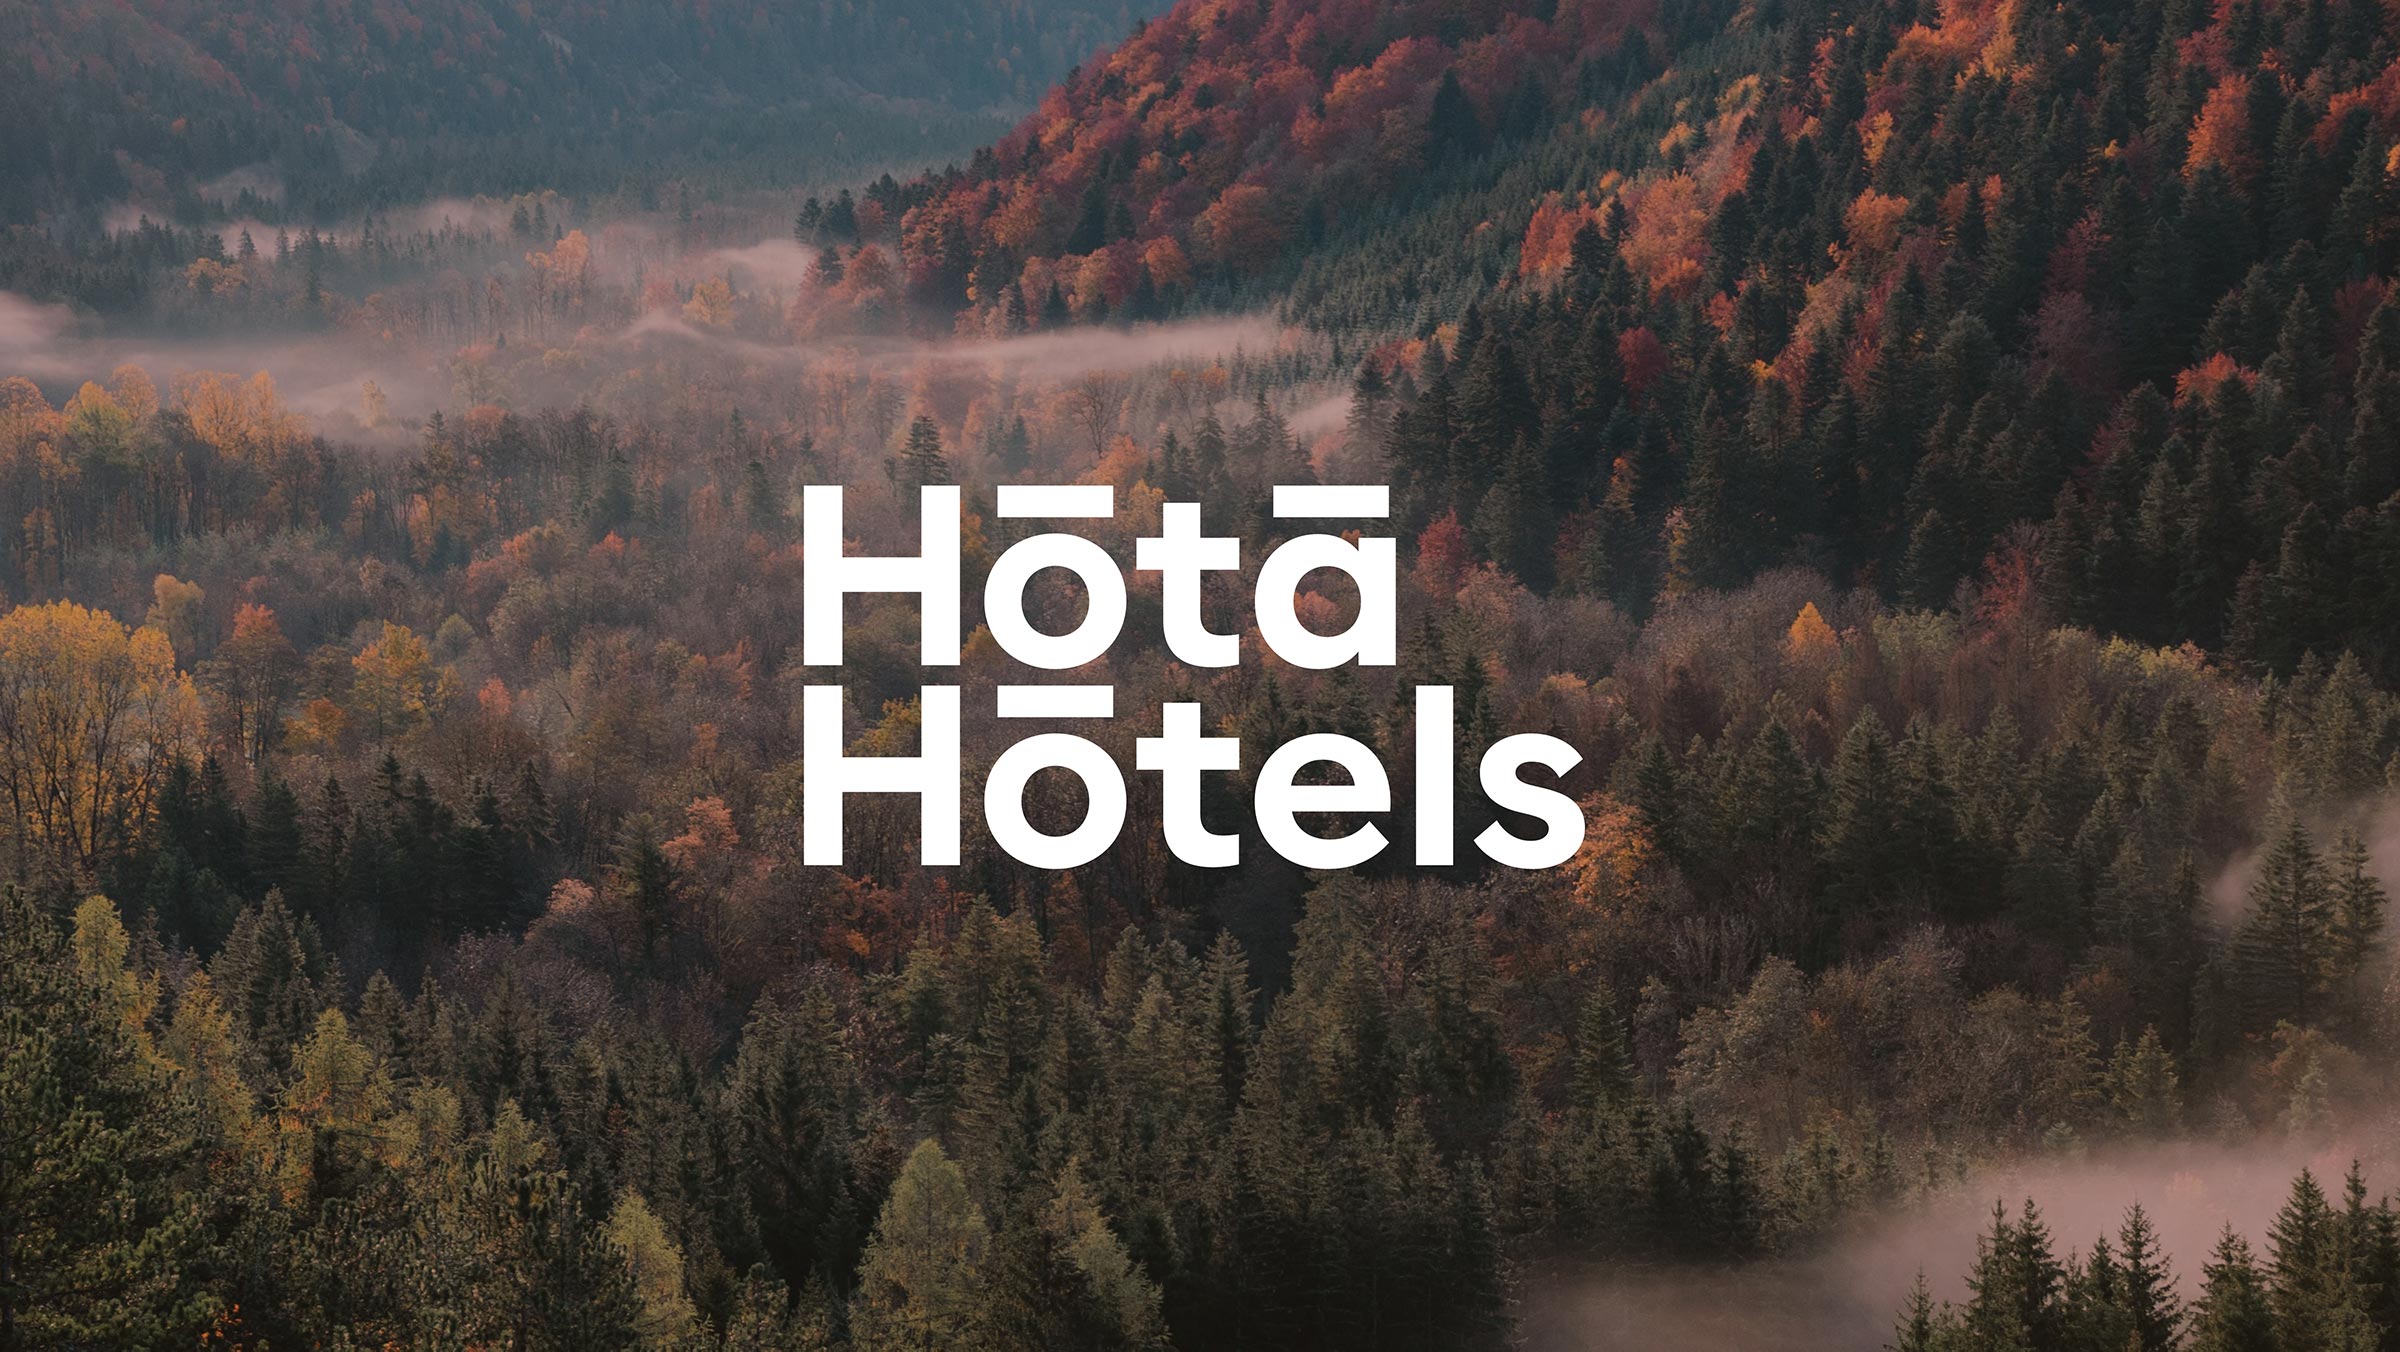 Hota Hotels